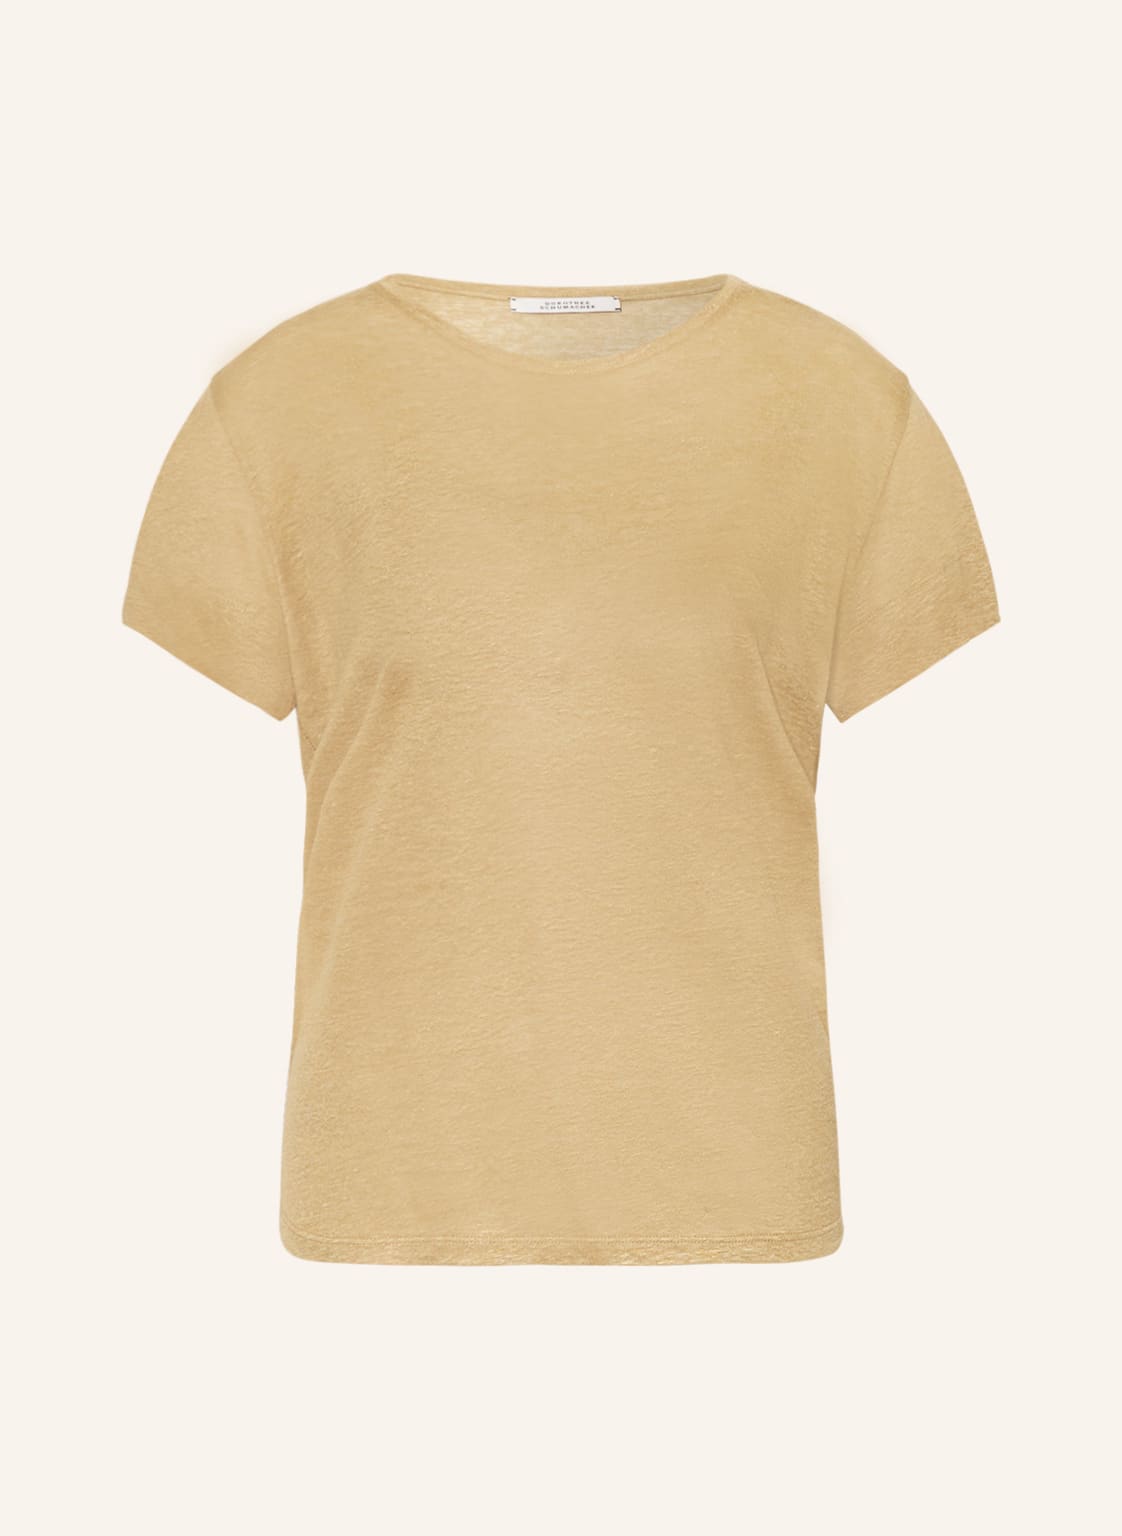 Dorothee Schumacher T-Shirt beige von dorothee schumacher